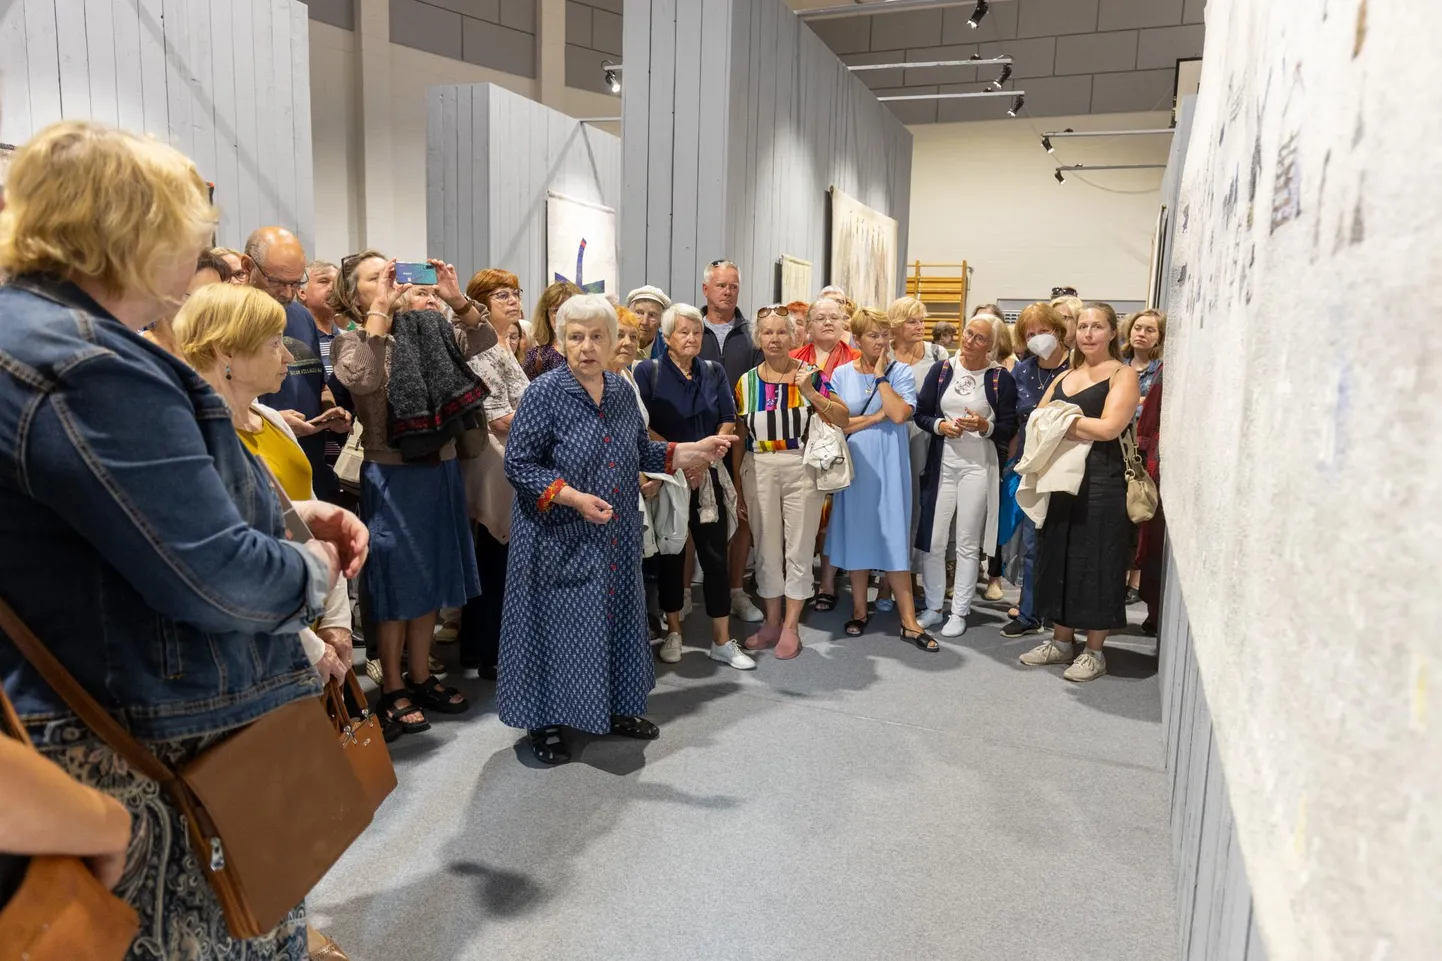 Anu Raua juubelile pühendatud näitus "Elumustrid" Heimtali spordisaalis pälvis Muuseumiroti auhinna. Näitust käis vaatamas üle 6000 inimese.